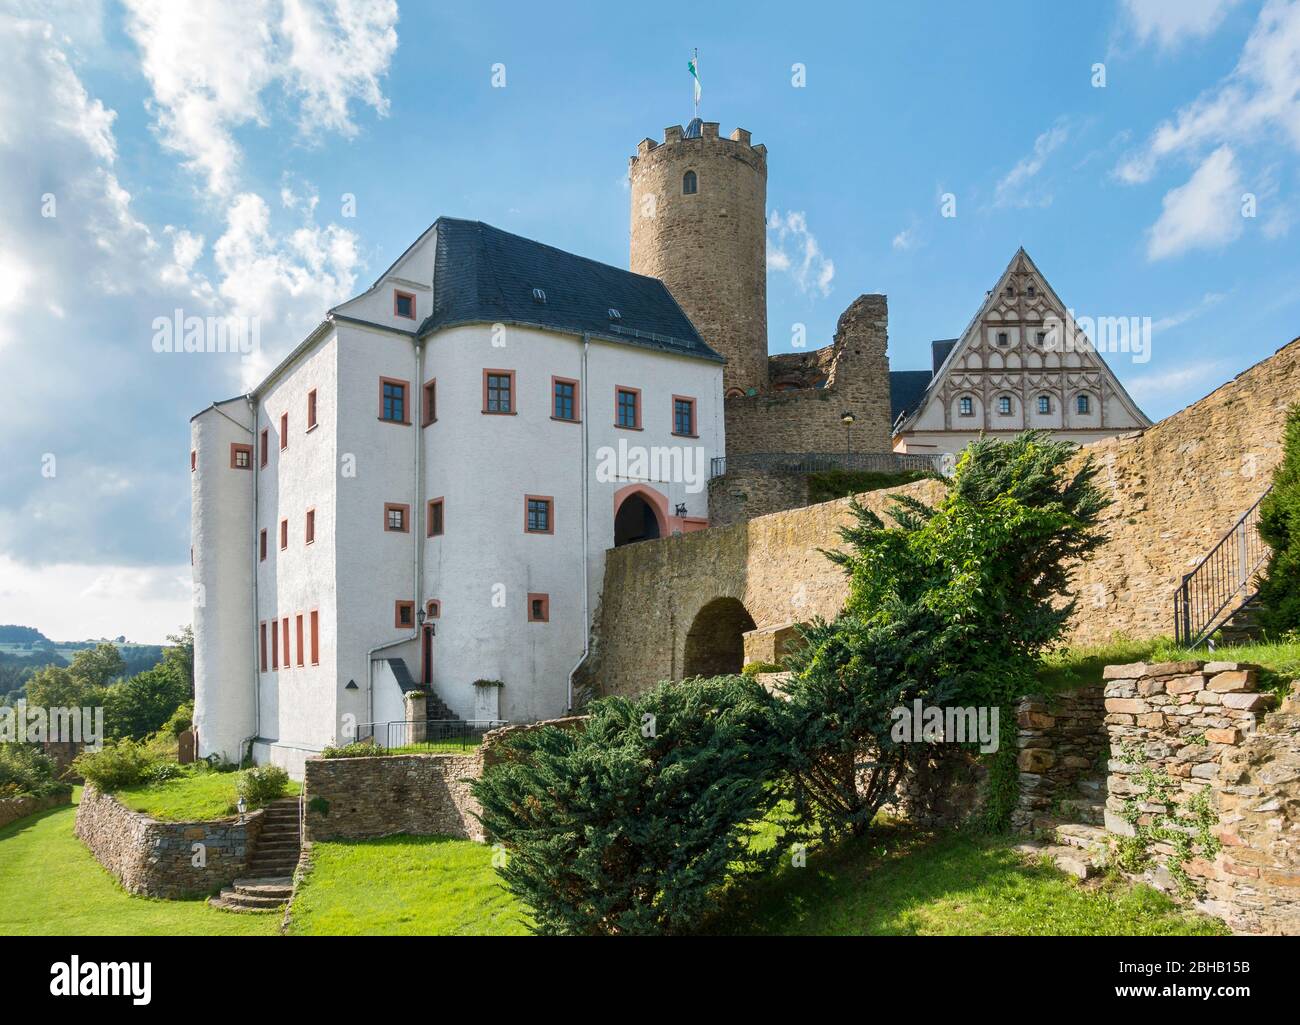 Deutschland, Sachsen, Drebach - Scharfenstein, Schloss Scharfenstein, in der Burg befindet sich das "Weihnachts- und Spielzeugmuseum" Stockfoto